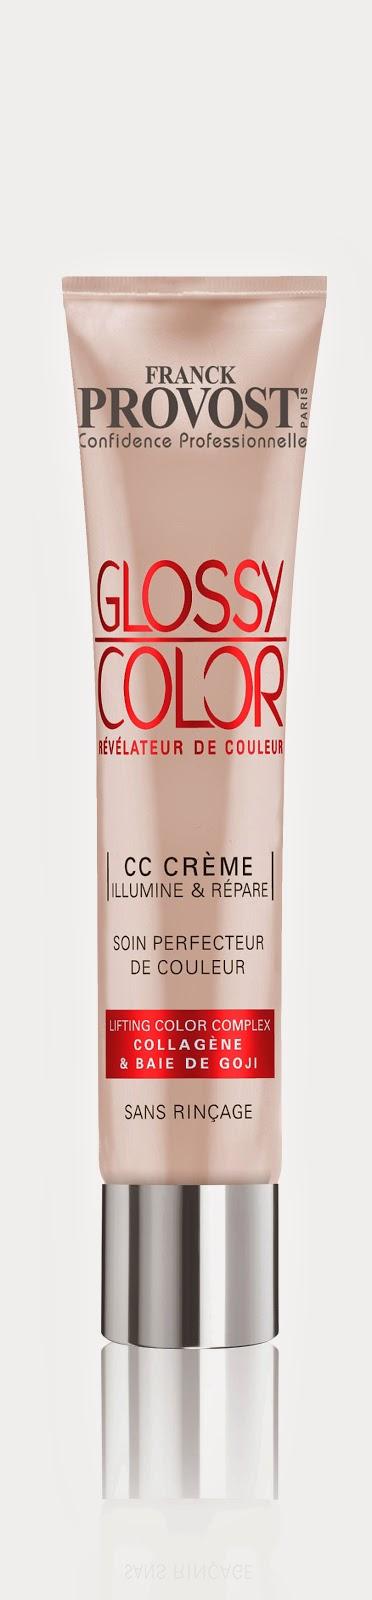 Indian Sun y Glossy Color CC Cream, las novedades de Franck Provost